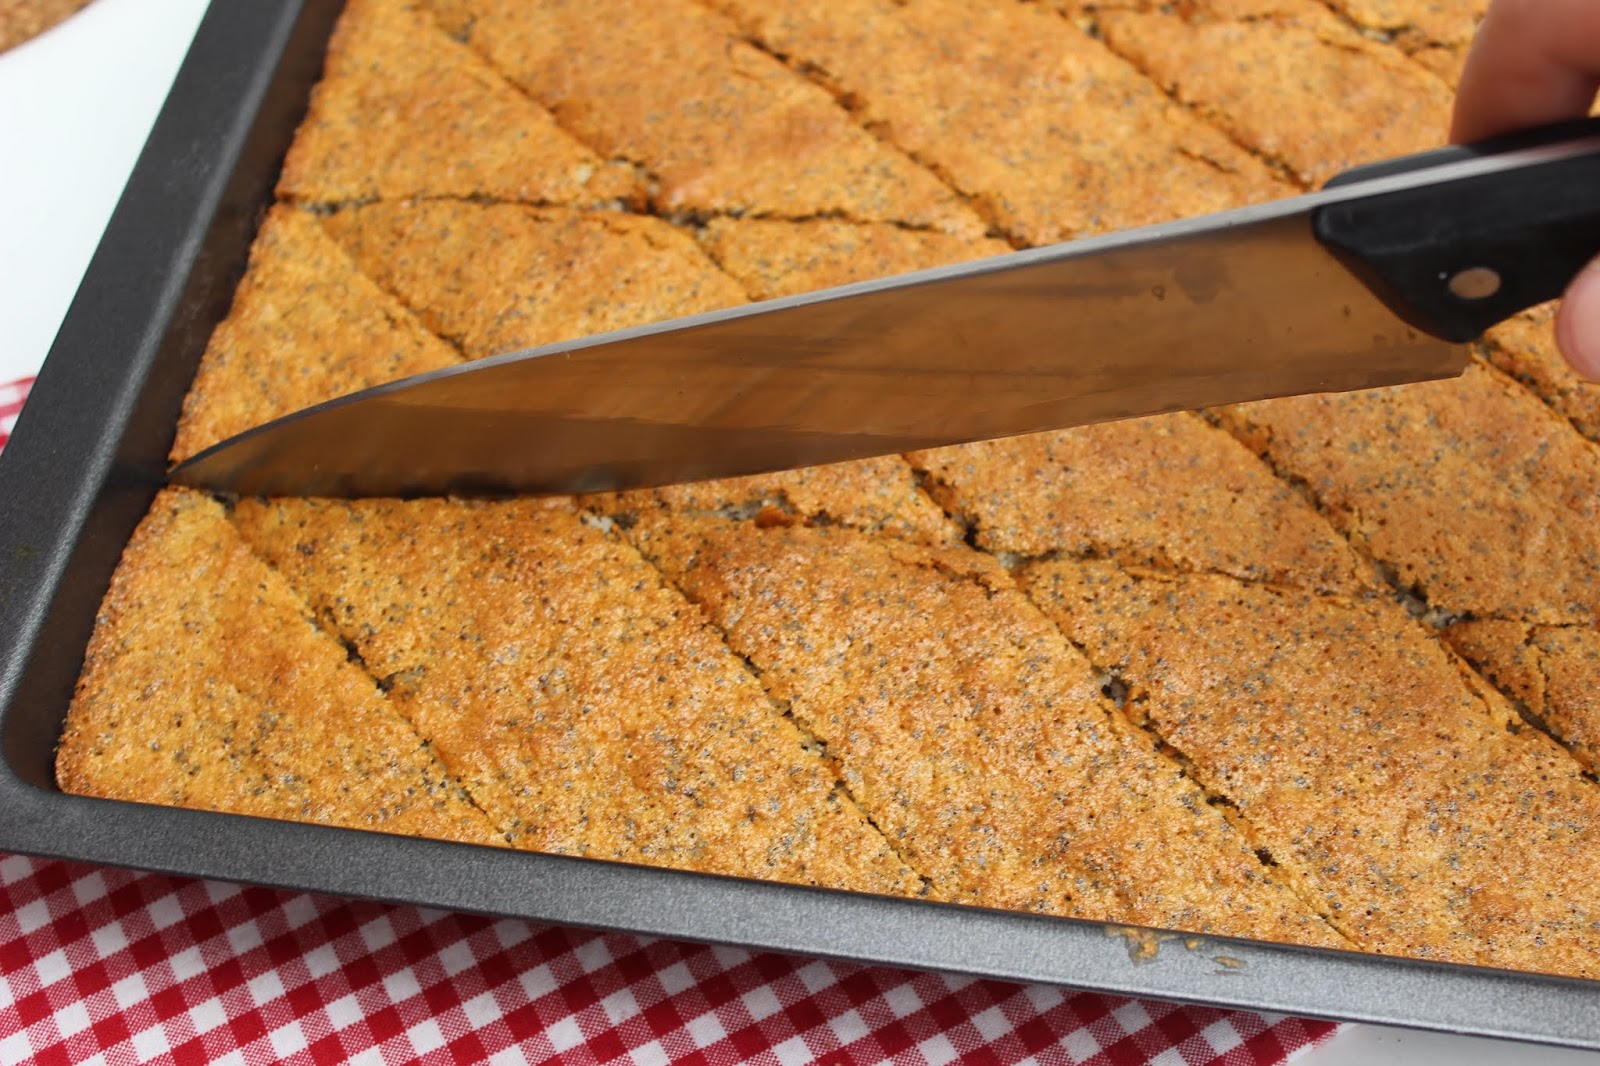 gruensteinKitchen: Revani - türkischer Grießkuchen mit Zuckersirup